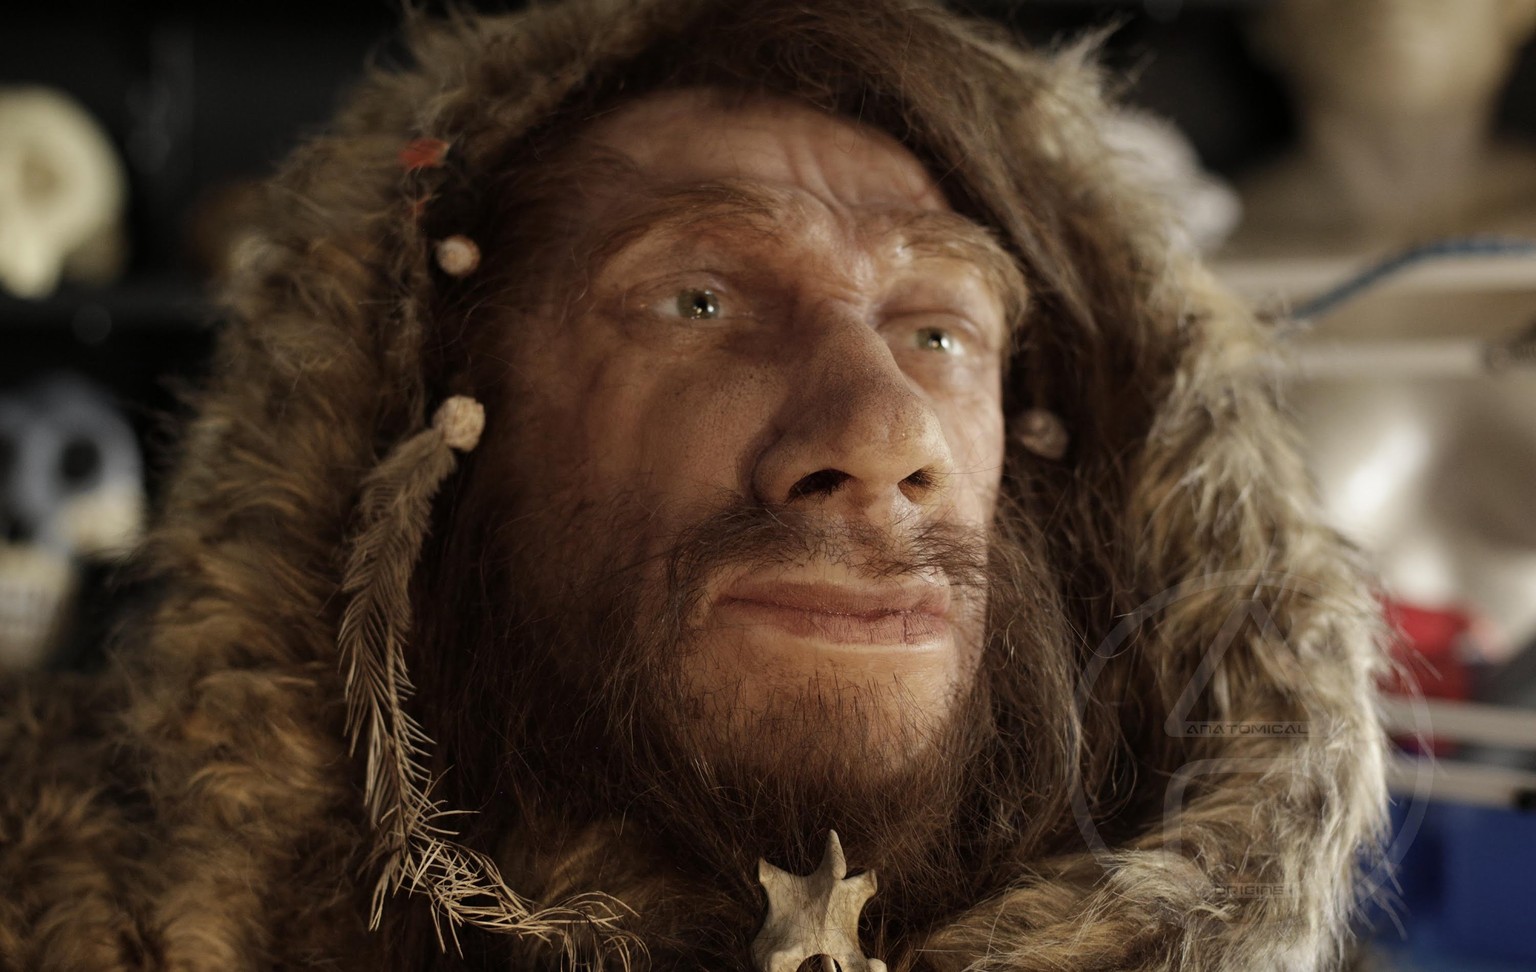 Wuchtiges Gesicht, grosse Nase: Der Neandertaler war nicht gerade zart gebaut.&nbsp;